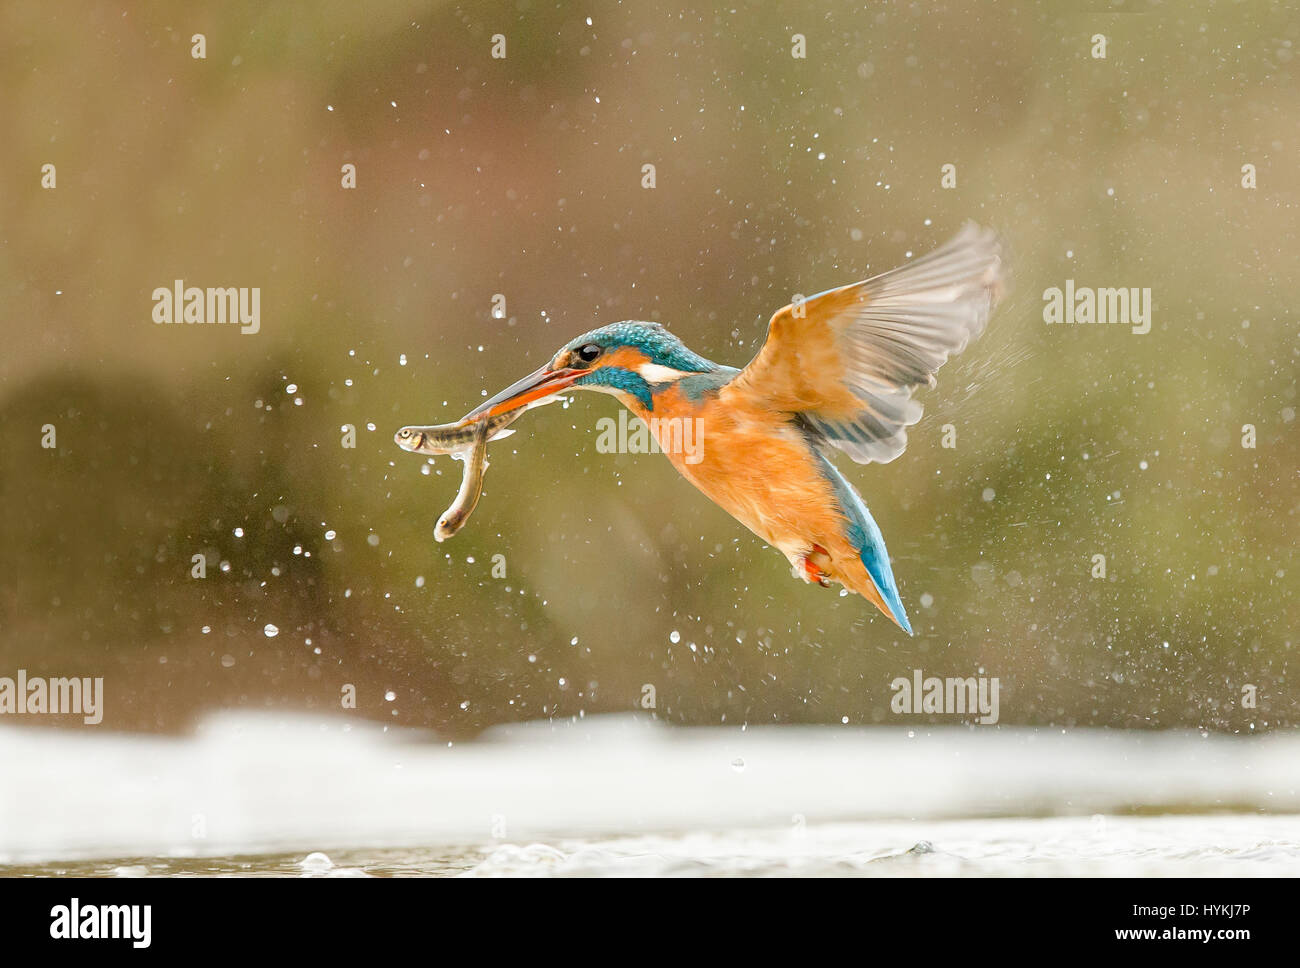 Sudoeste de Escocia, Reino Unido: UK RAPIDÍSIMAS Kingfisher se ha roto desde sólo 15 metros por un fotógrafo local. Las fotografías muestran esta brillantemente coloreado azul y naranja tuviese tantas aves descontrol en el río, el buceo y disfrutar de una comida para picar en una percha cercana que es un signo de advertencia irónicamente, "privado de pesca". Fotógrafo Ron McCombe (61) de Hawick en las fronteras escocesas, pasé cinco días y hasta diez horas al día para capturar el carácter de este maravilloso clásico británico bird en el sudoeste de Escocia. Foto de stock